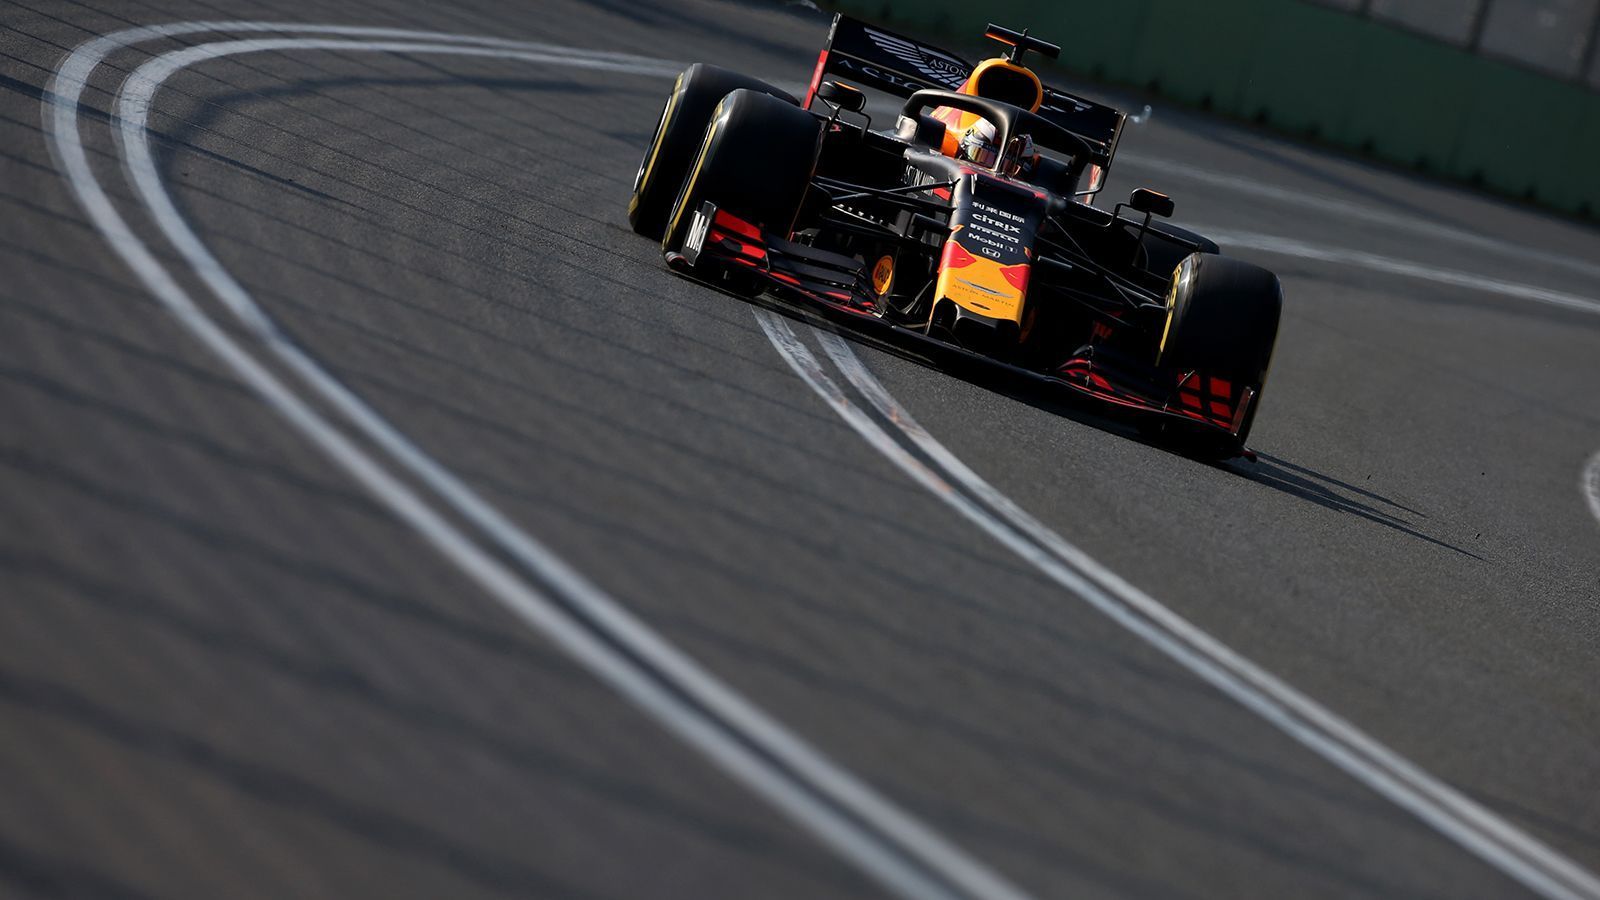 
                <strong>Red Bull hat Kontakt zur Spitze!</strong><br>
                Der Red Bull ist schnell. In Melbourne kassierte Verstappen nicht nur Vettel, er wäre fast auch an Hamilton vorbei gekommen und Zweiter geworden. Honda zum Motorenpartner zu machen und damit zum verkappten Werksteam zu werden, scheint die goldrichtige Entscheidung gewesen zu sein.
              